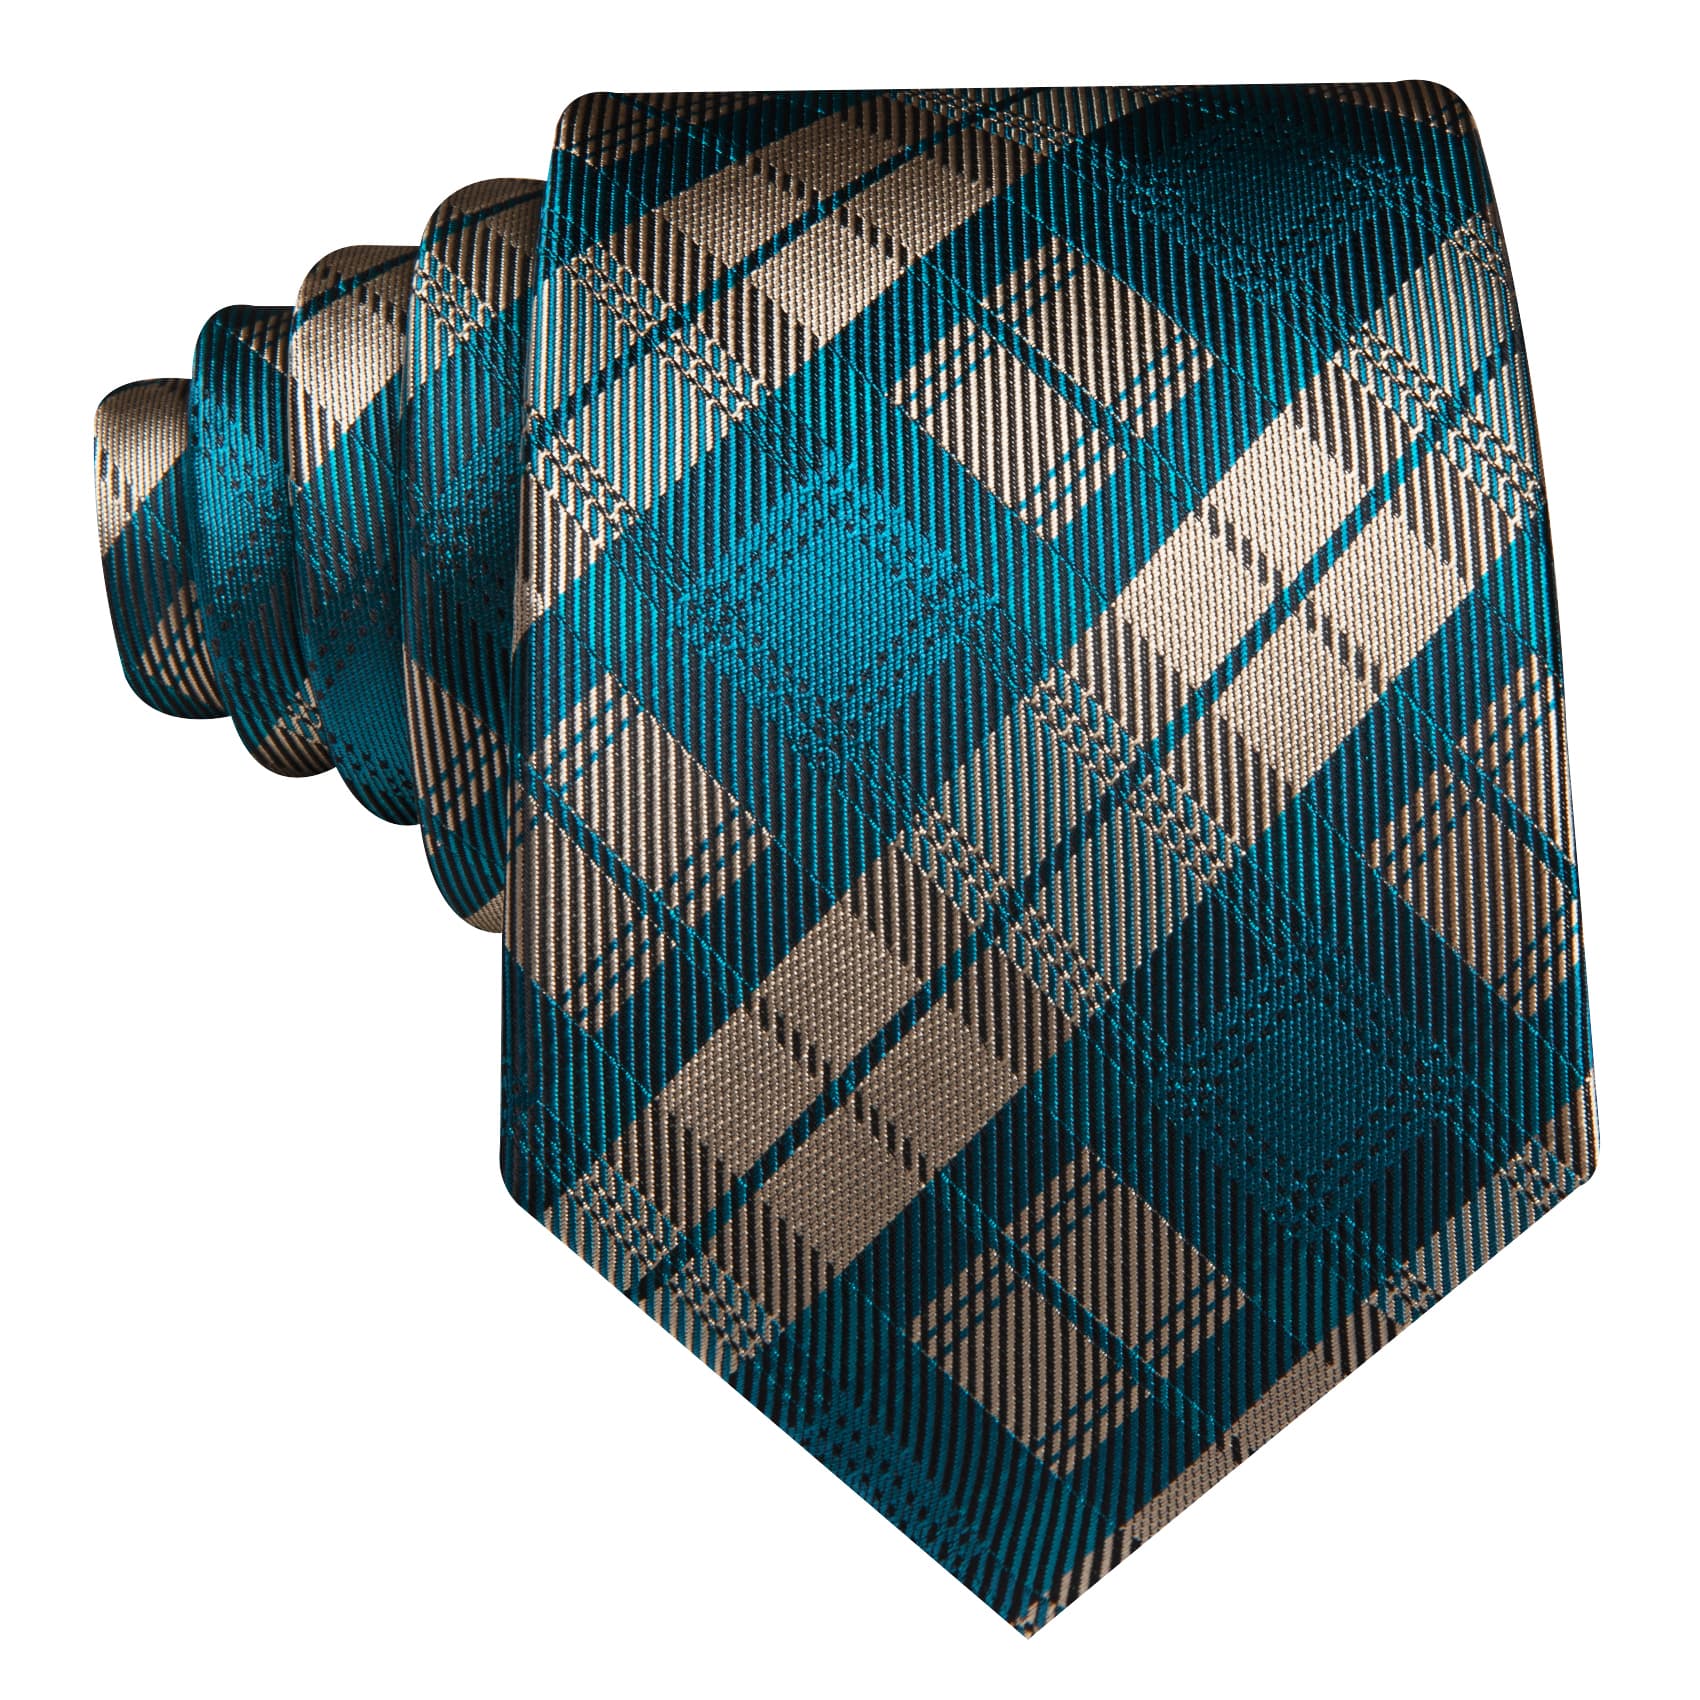  Tie Plaid Beige Teal Blue Checkered Necktie Hanky Cufflinks Set